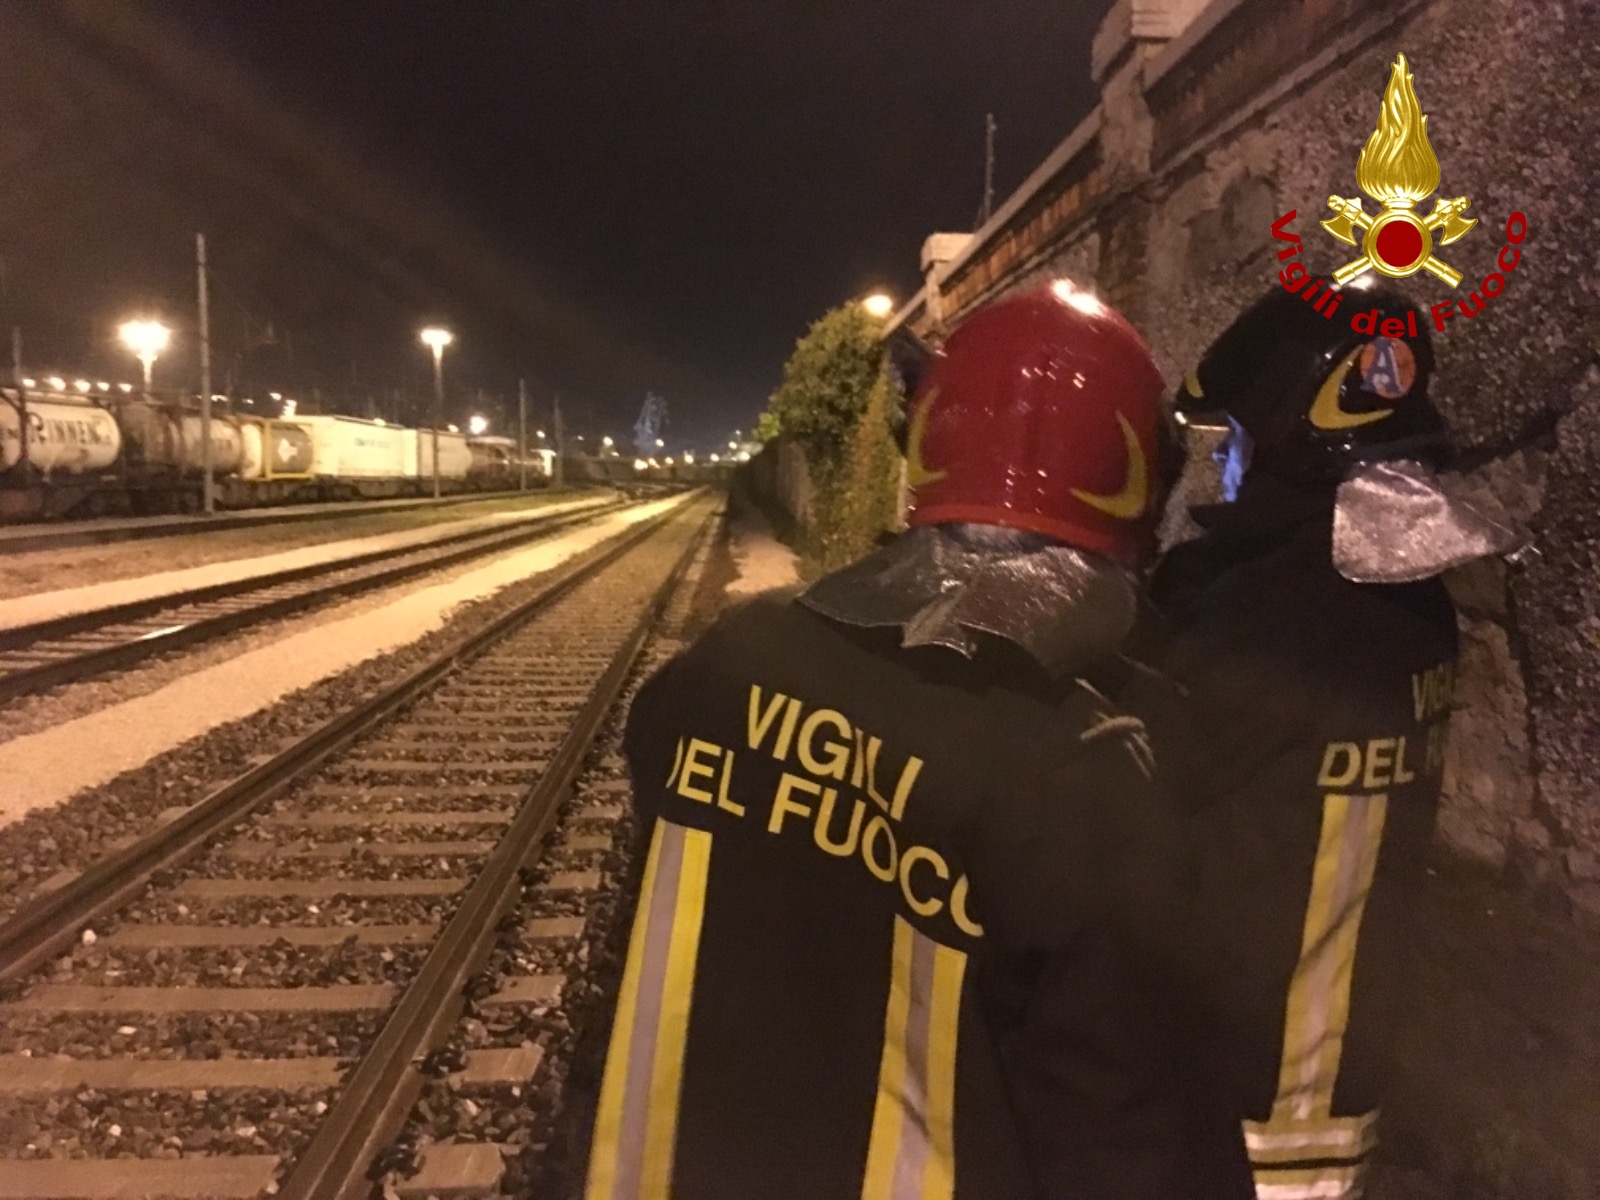  Trieste, perdita gas da un container cisterna caricato su carro ferroviario